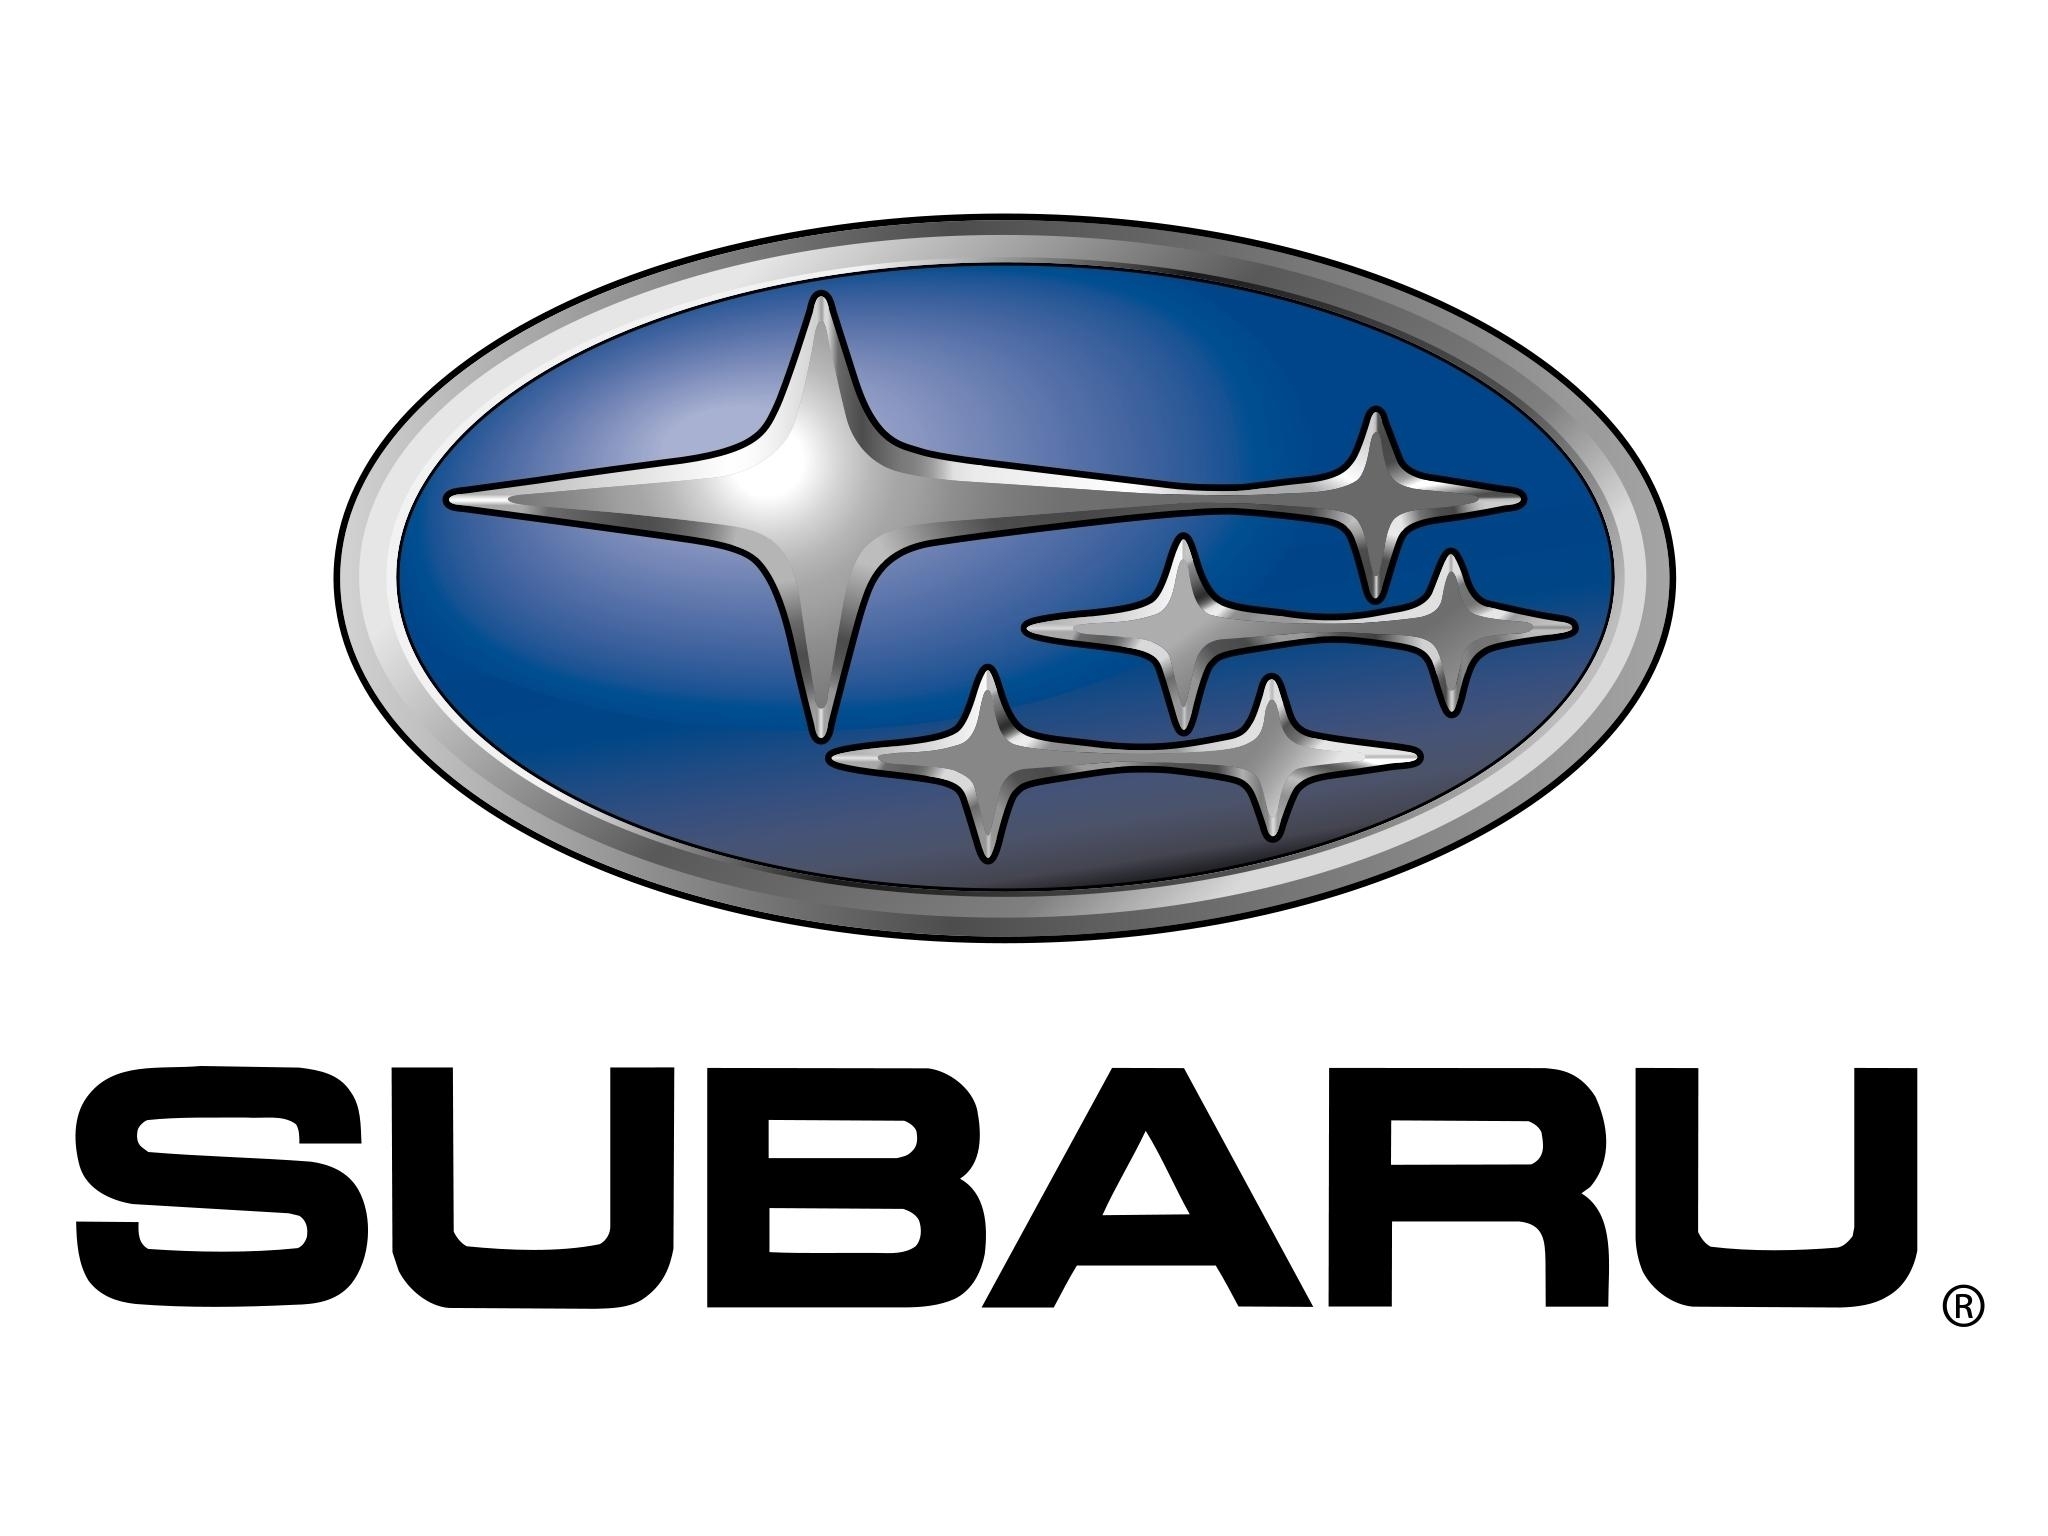 Скачать обои бесплатно Машины, Фон, Субару (Subaru), Логотипы, Бренды картинка на рабочий стол ПК